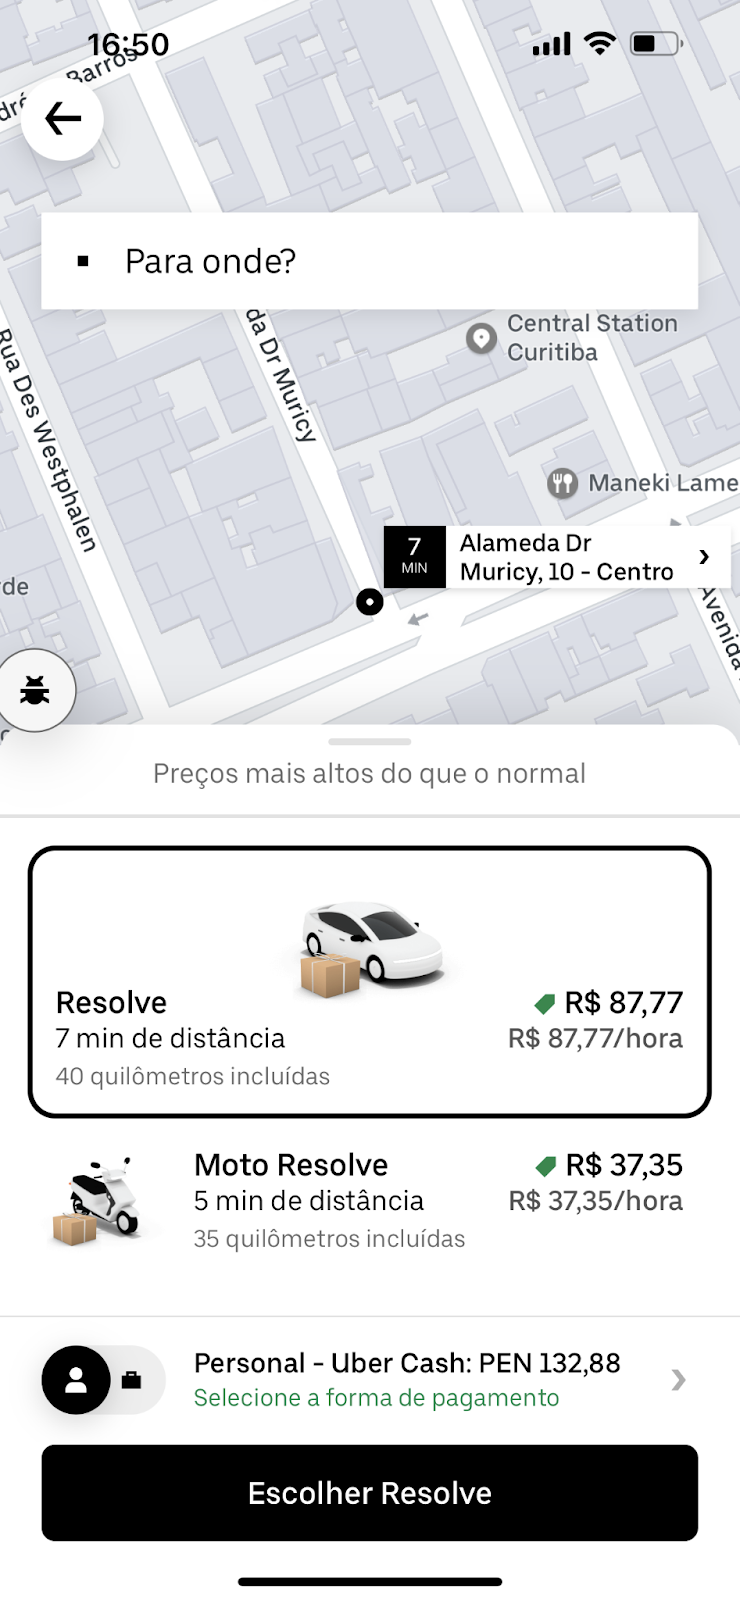 Nova solução da Uber realiza cobrança por hora para realização de atividades. (Fonte: Uber/Divulgação)